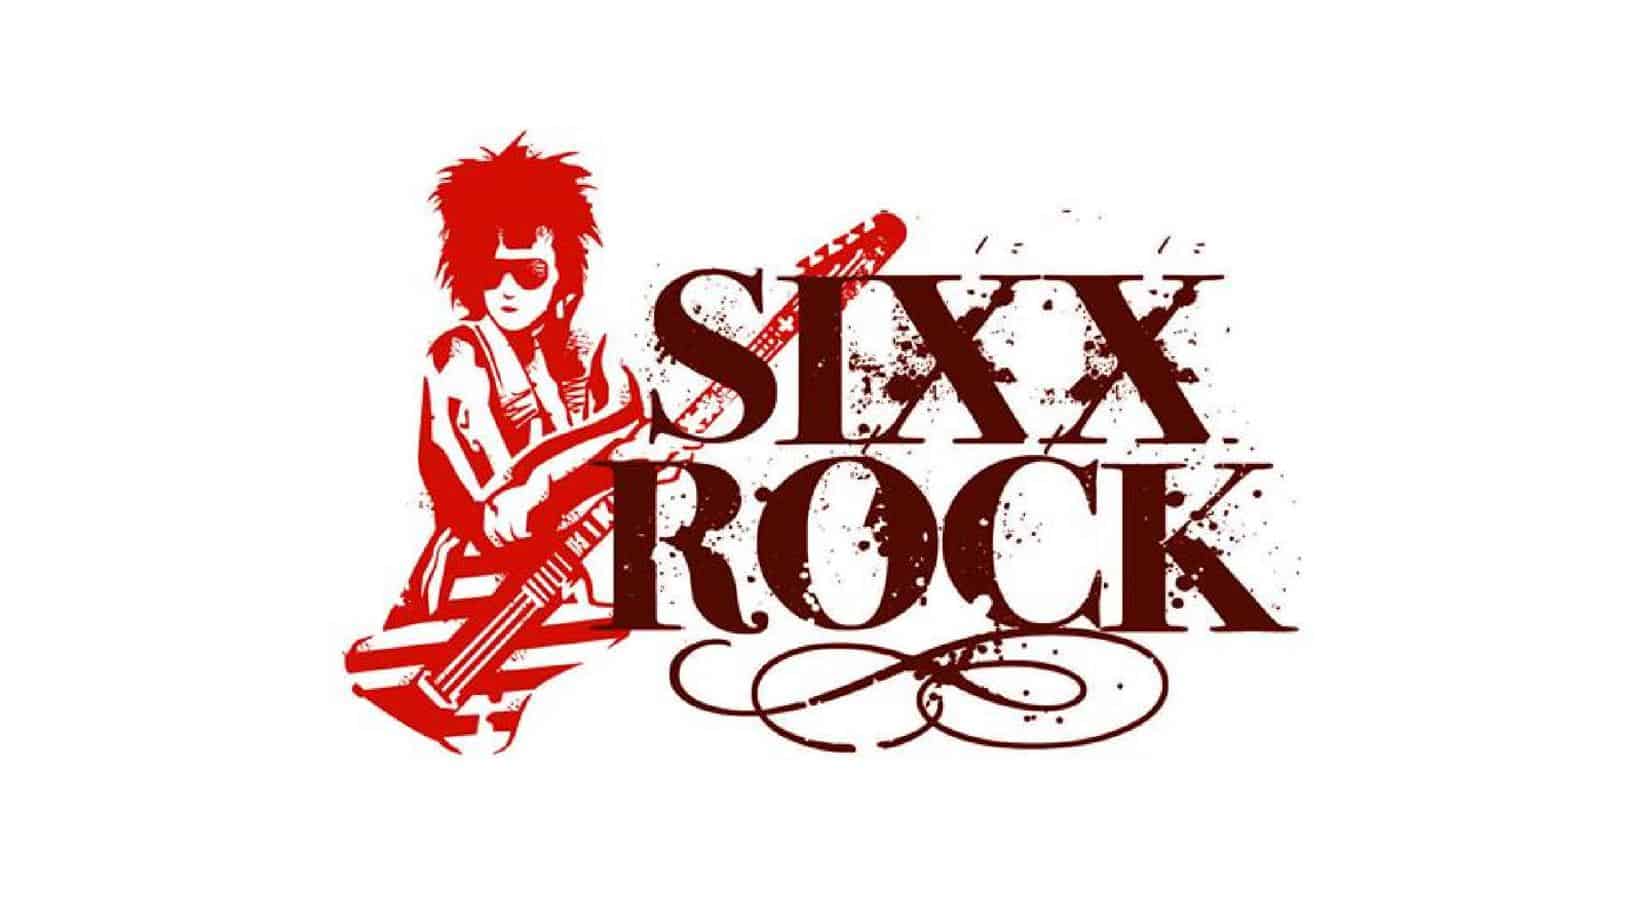 sixx rock